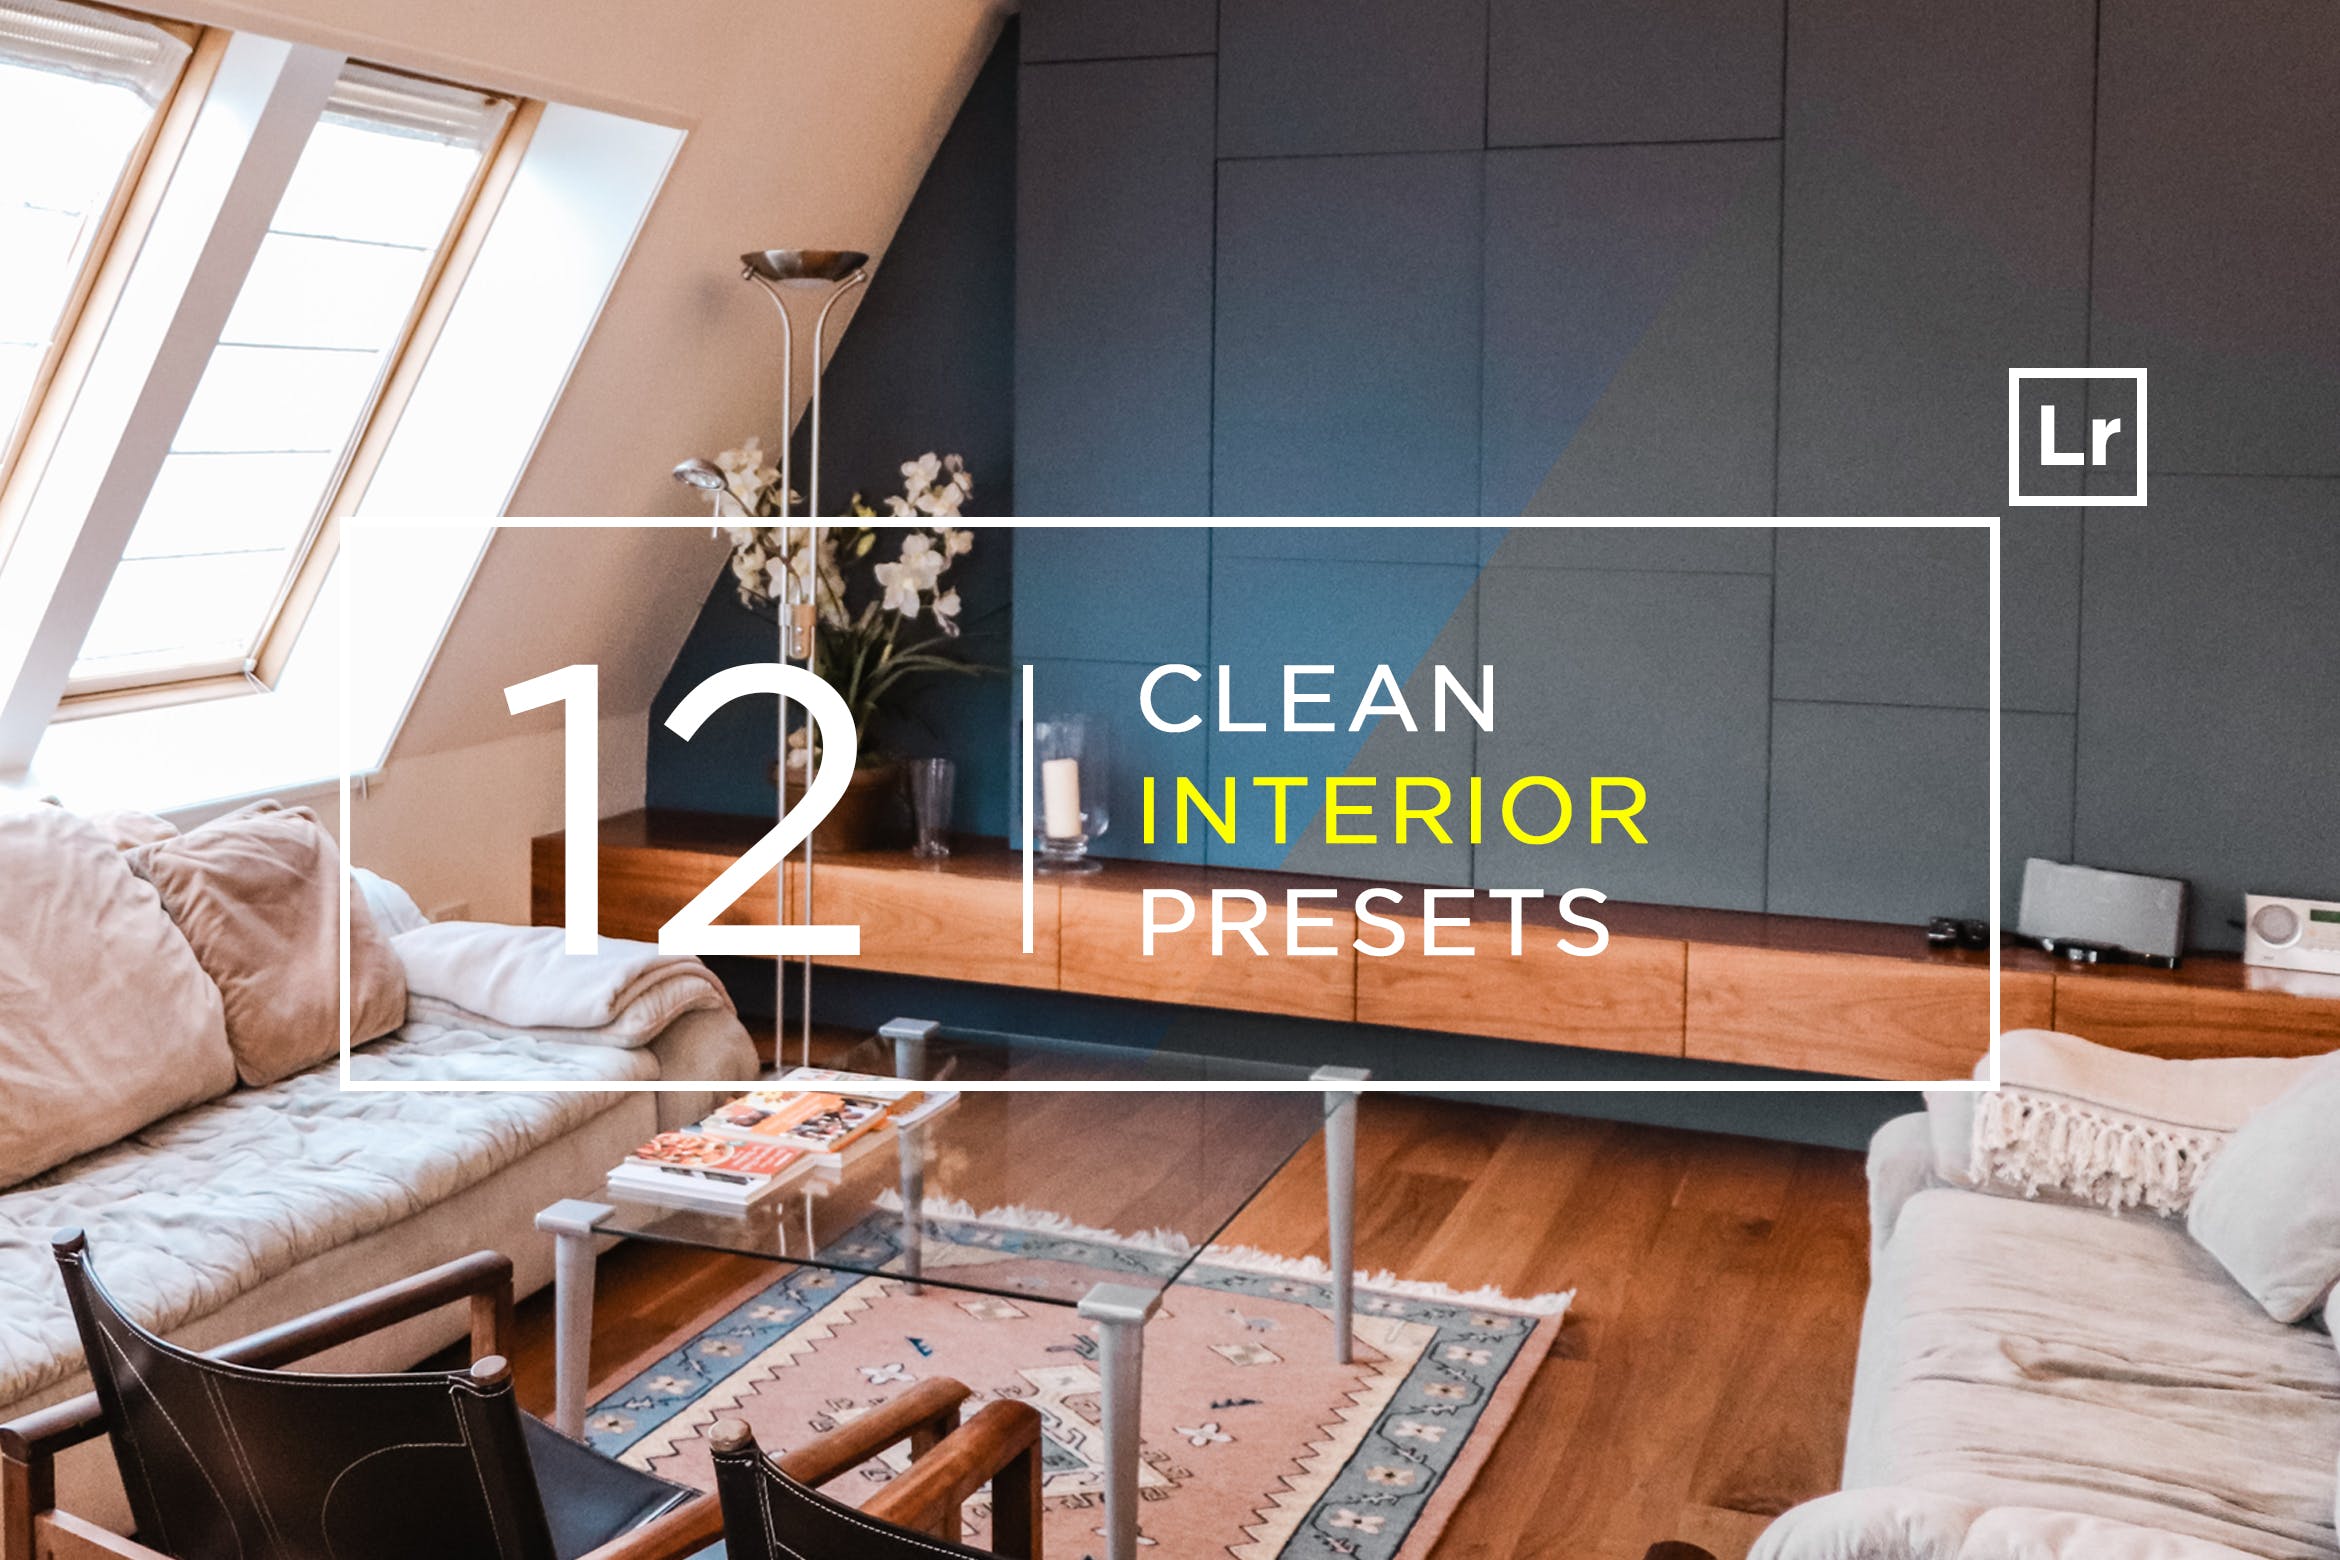 12款室内摄影必备的调色滤镜第一素材精选LR预设 12 Clean Interior Lightroom Presets插图